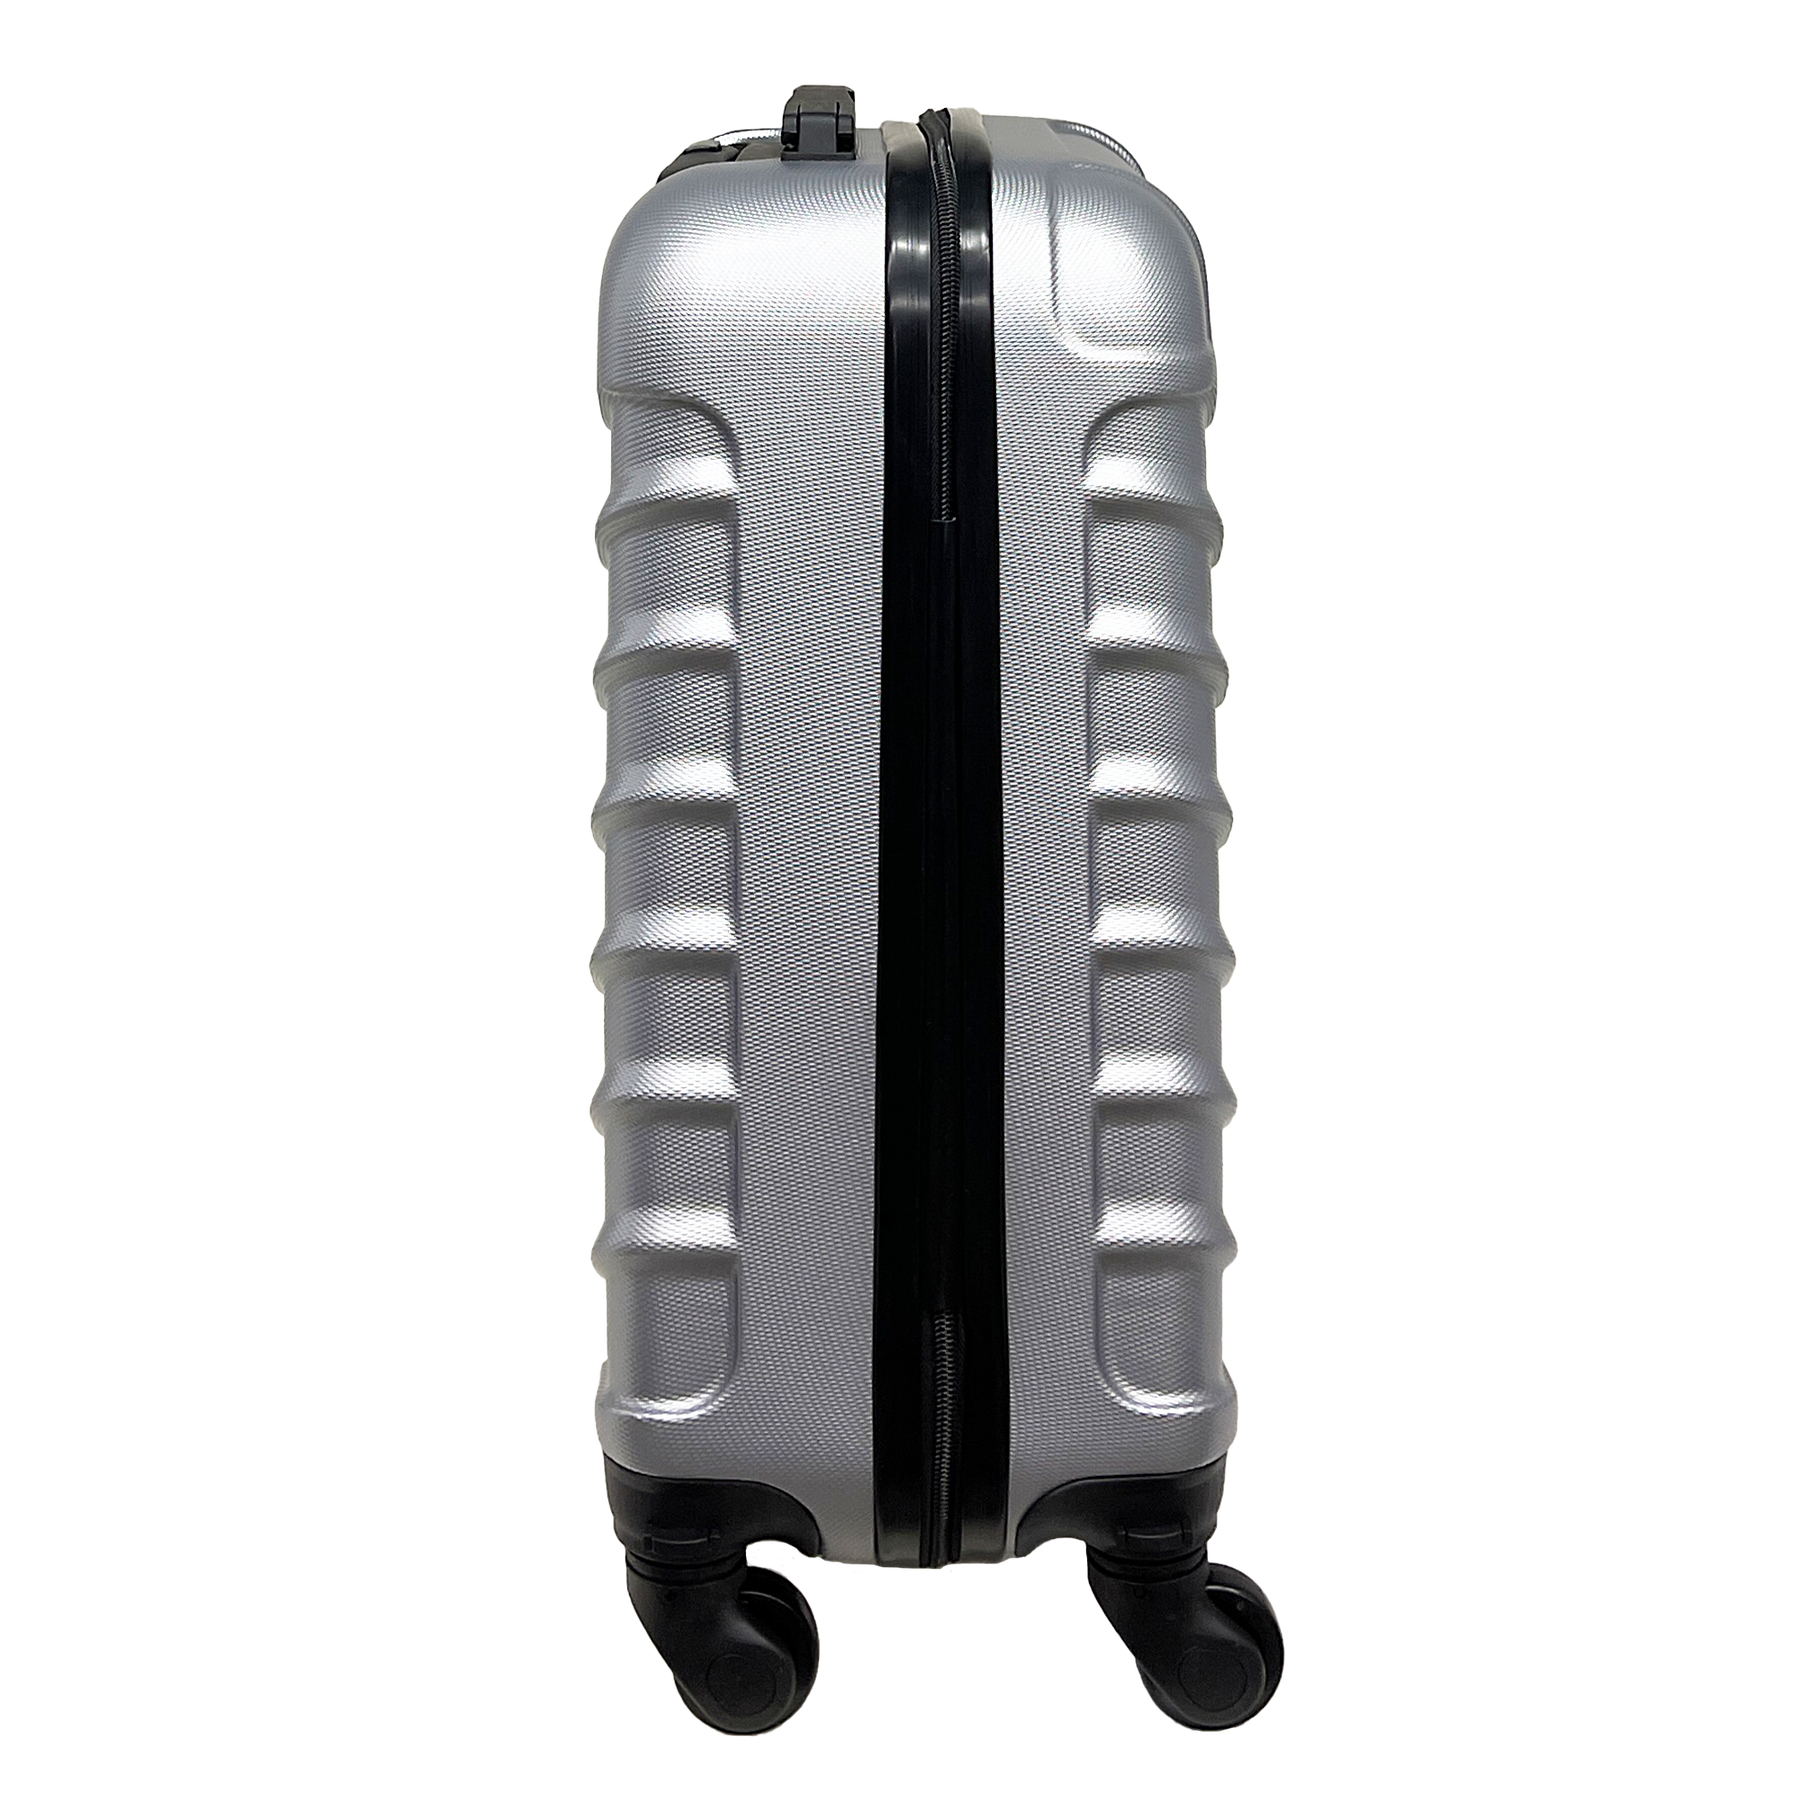 LLD ORMI - merev kézi poggyász ABS 20 "-ban (56x40x24,5 cm)